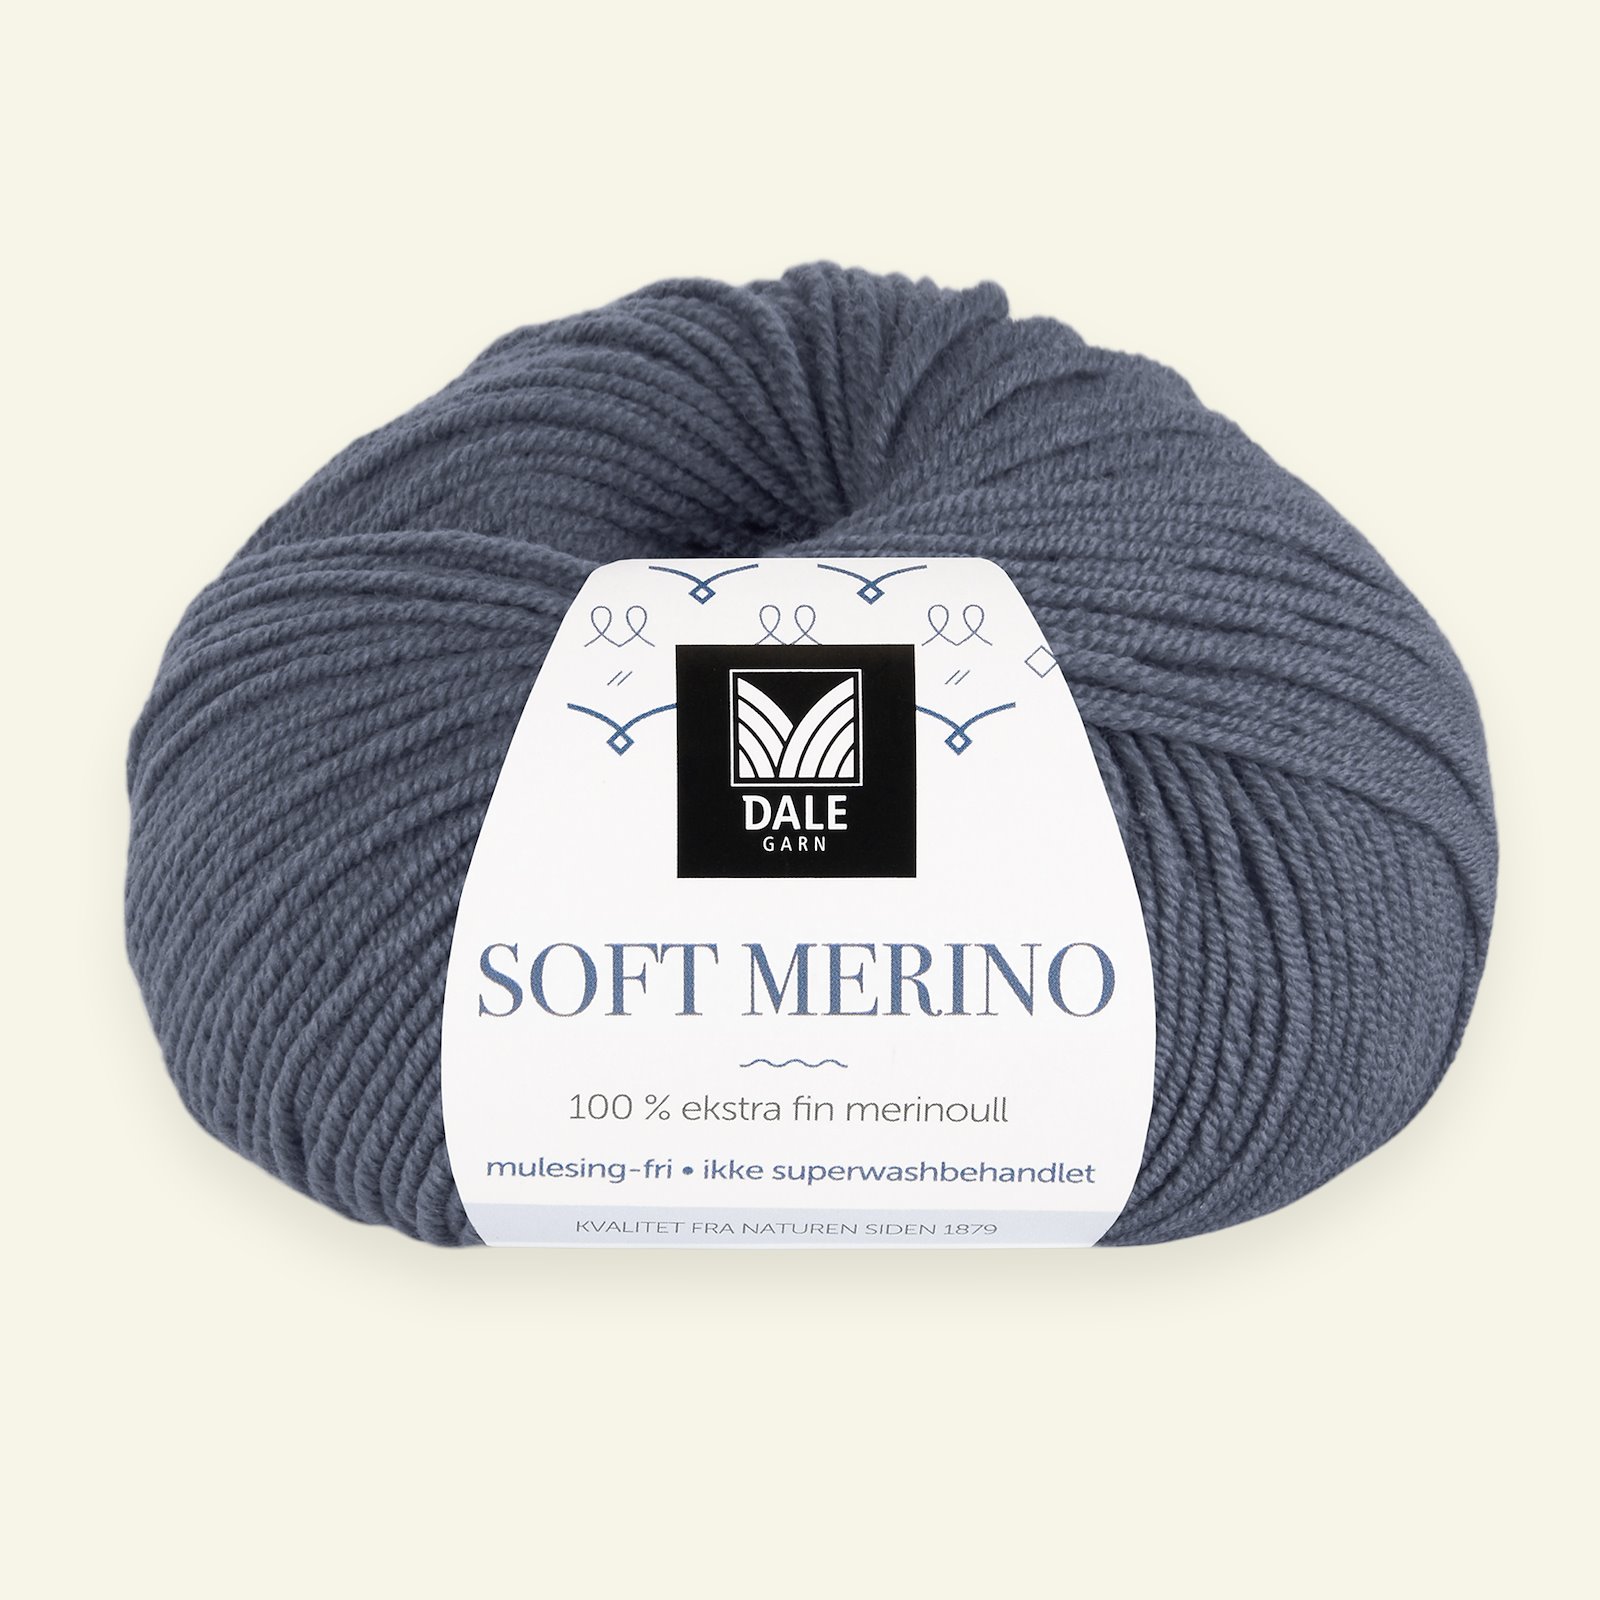 Dale Garn, 100% ekstra fint merinogarn "Soft Merino", Mørk gråblå (3014) 90000335_pack